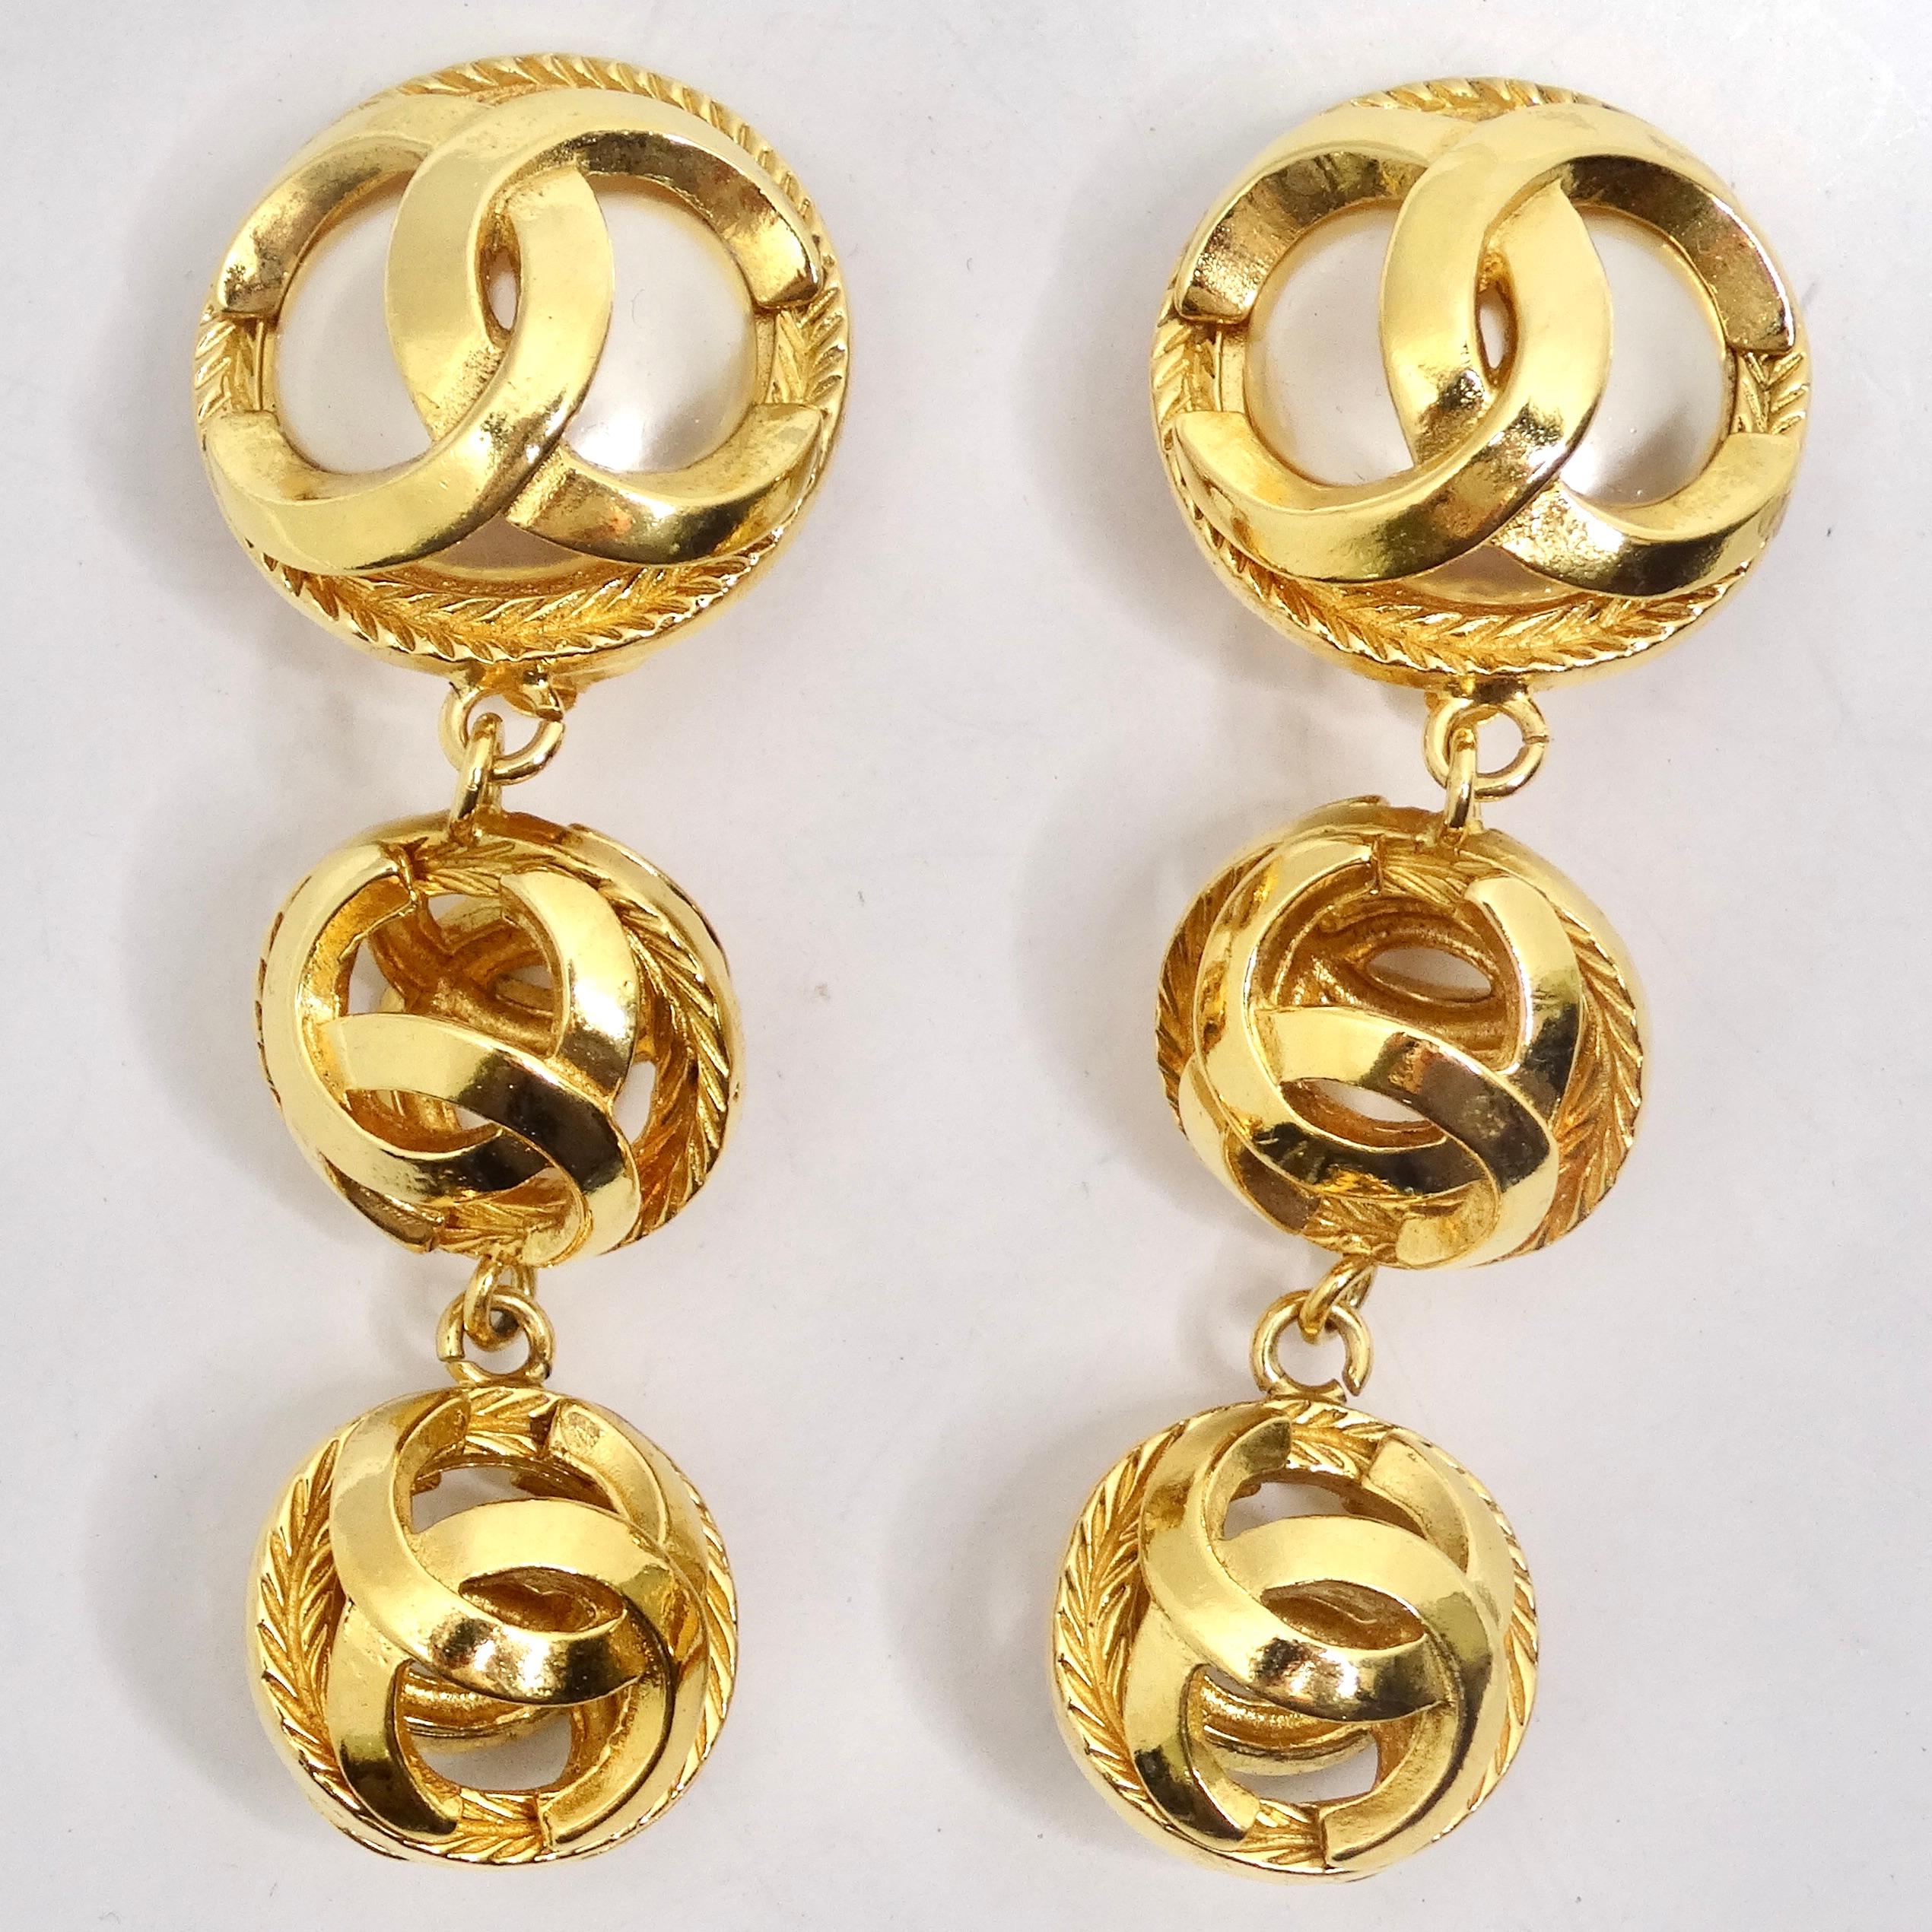 Wir präsentieren ein Paar exquisite Ohrringe aus den 1980er Jahren, die Chanel Gold Tone Pearl Drop Earrings. Diese Ohrringe zeigen die perfekte Kombination der ikonischen Chanel-Design-Elemente und sind ein Muss für alle, die klassische Raffinesse